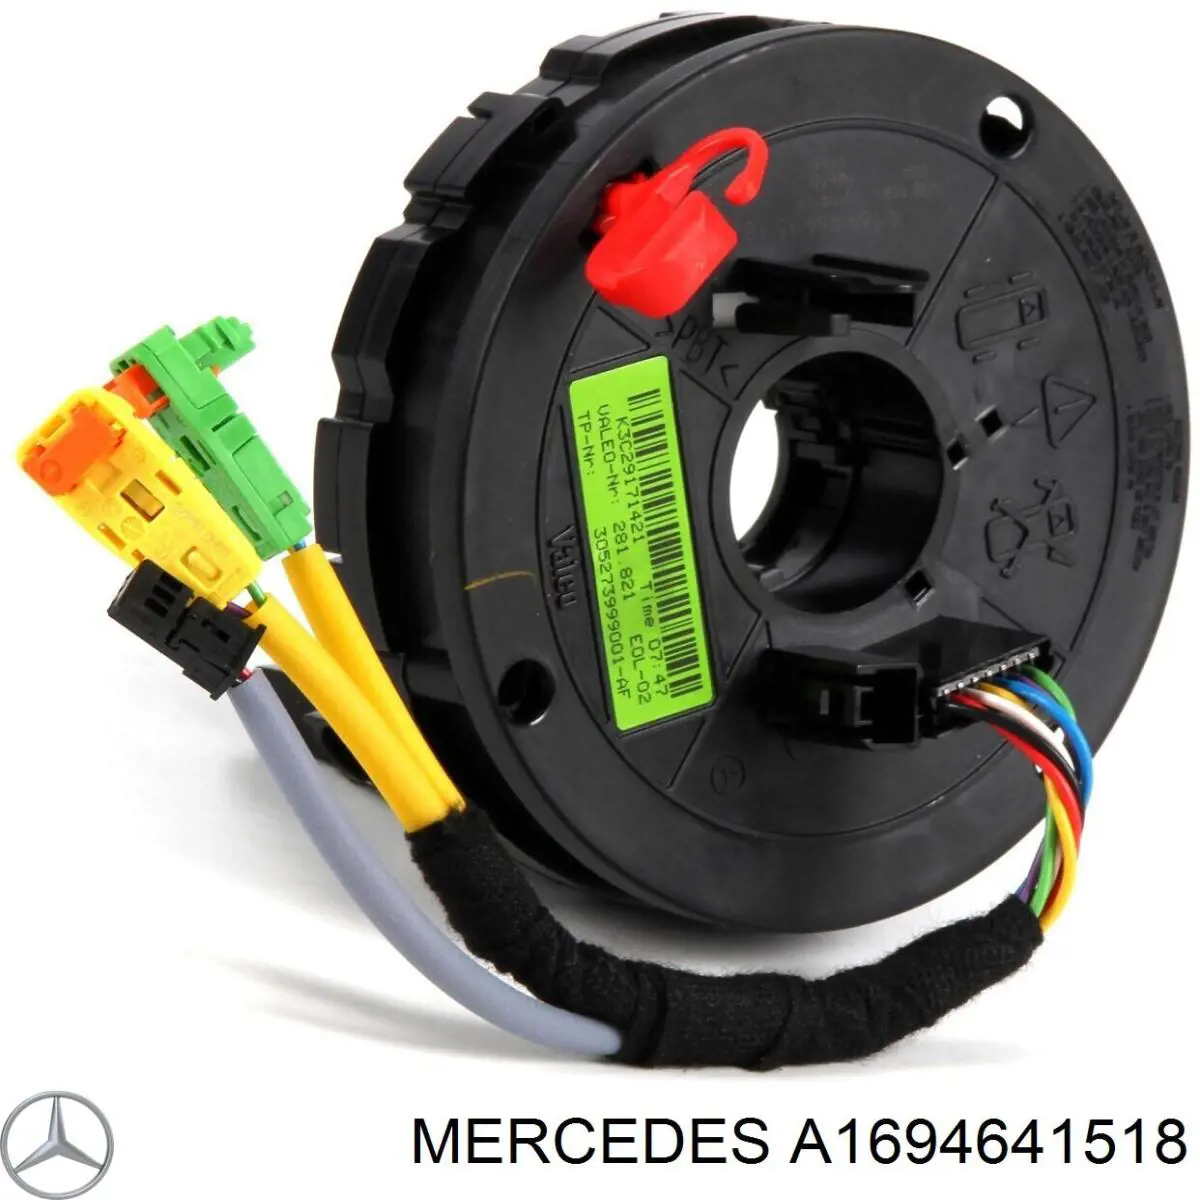 A1694641518 Mercedes anillo de airbag